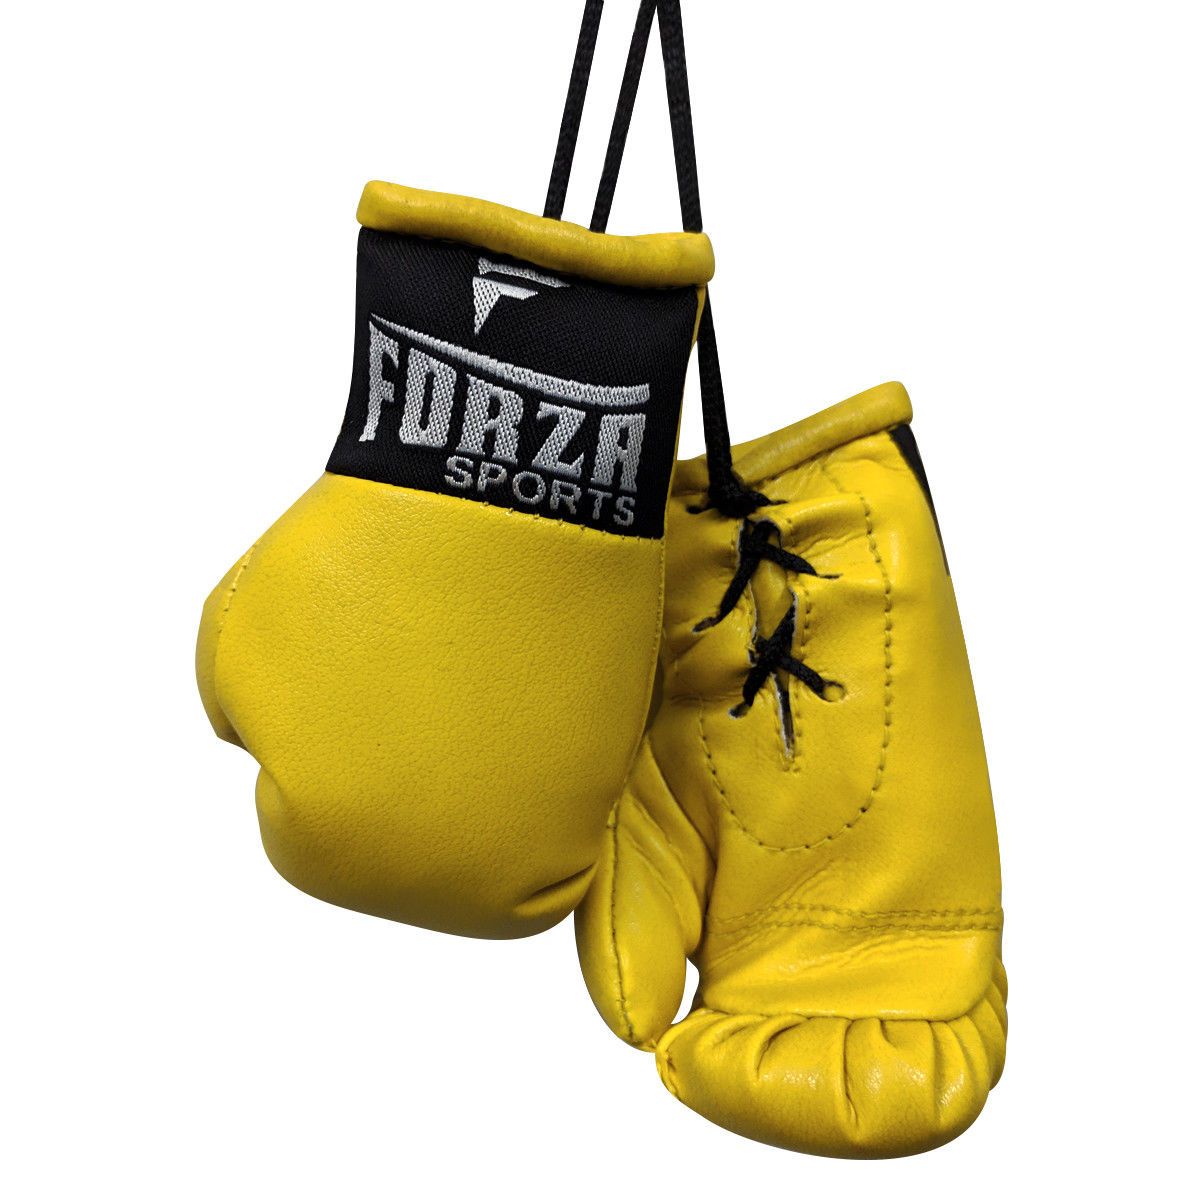 Mini Boxing Gloves